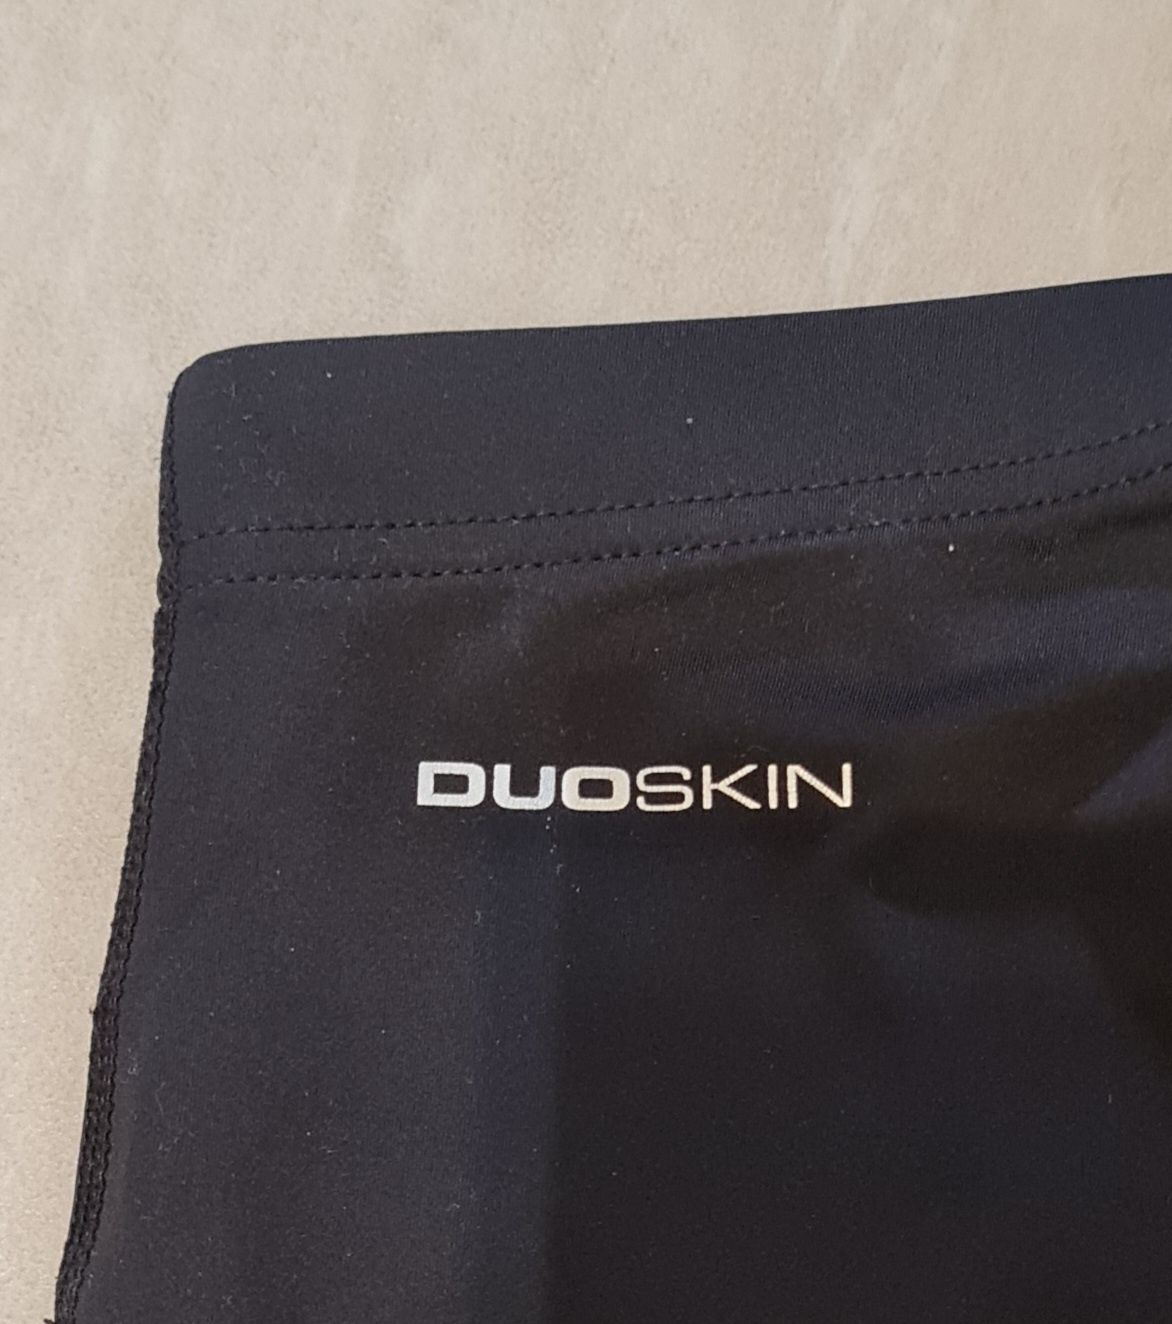 Praktycznie nowe spodnie treningowe DUO SKIN firmy TresPass